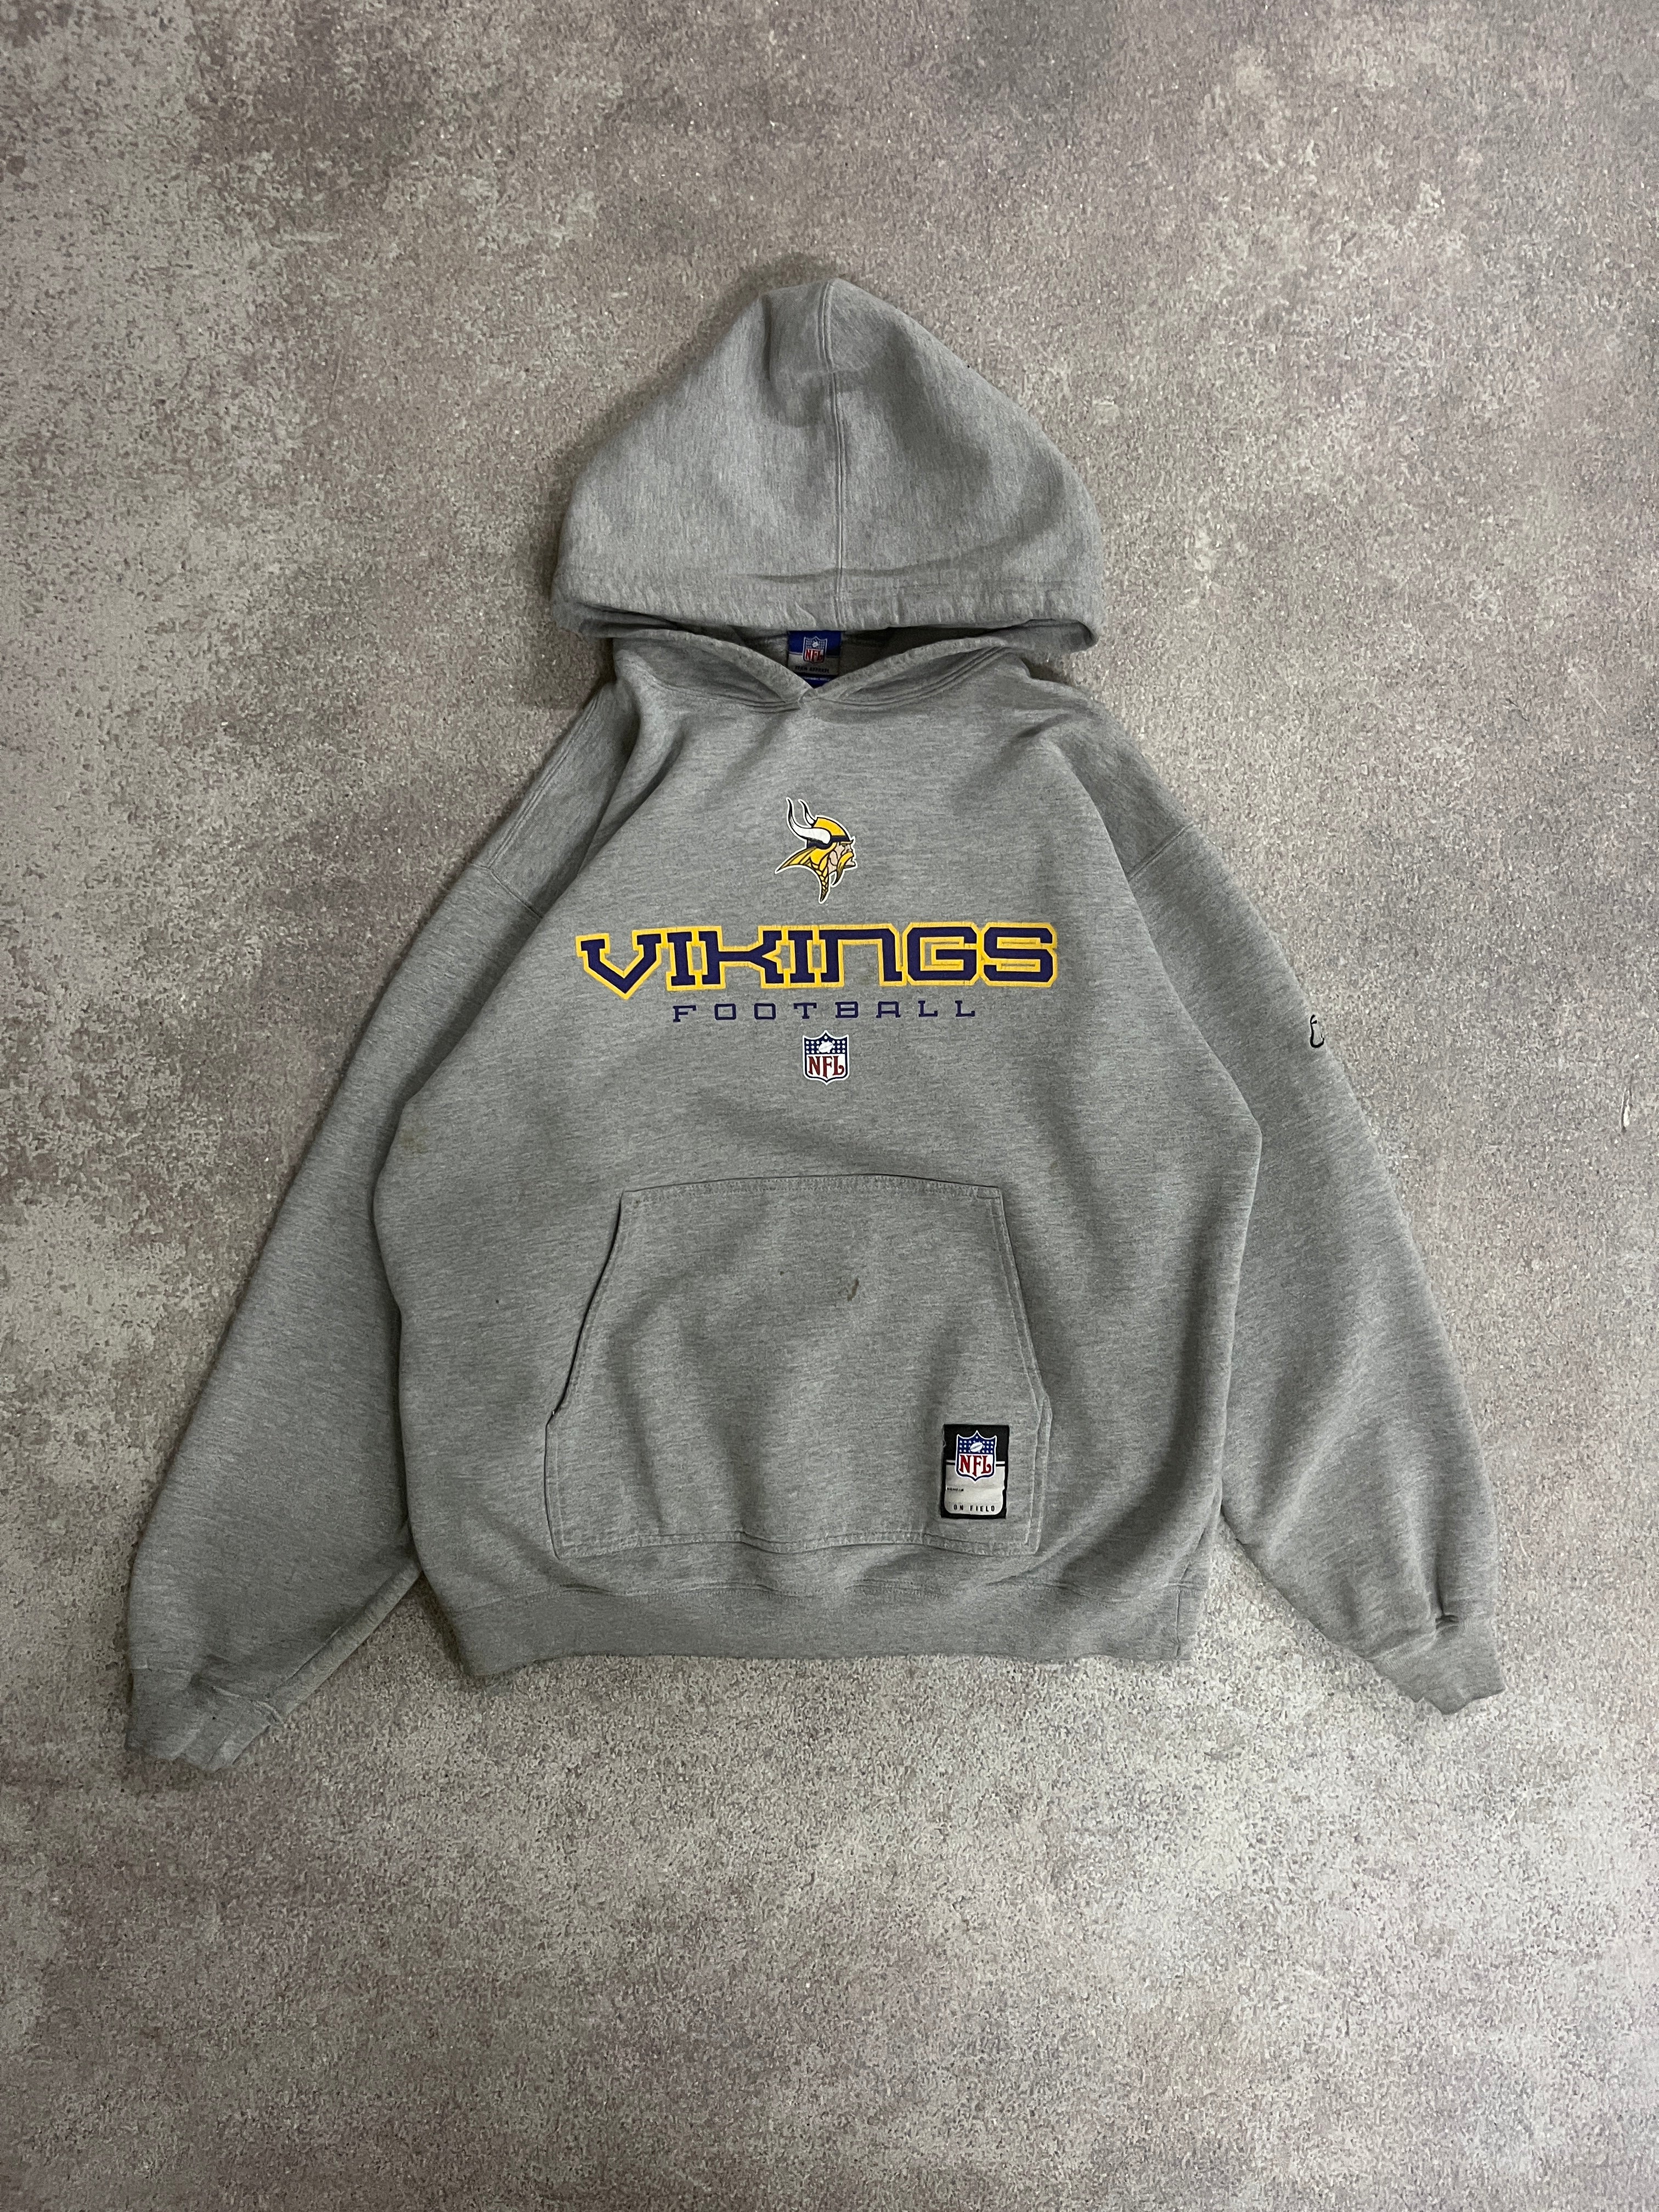 Vintage Vikings Football Hoodie Grey // Medium - RHAGHOUSE VINTAGE